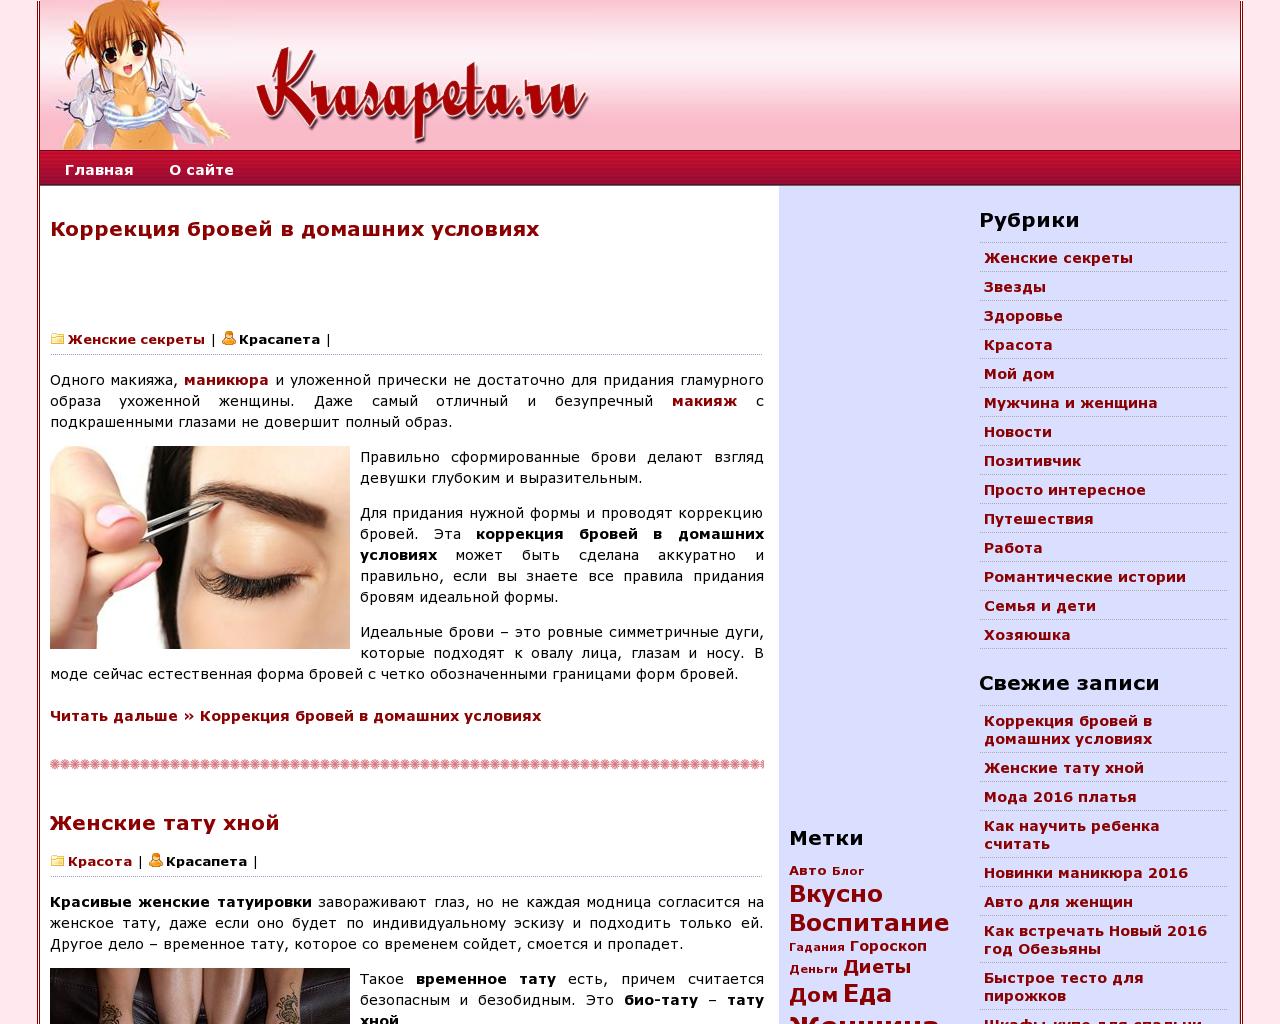 Изображение сайта krasapeta.ru в разрешении 1280x1024